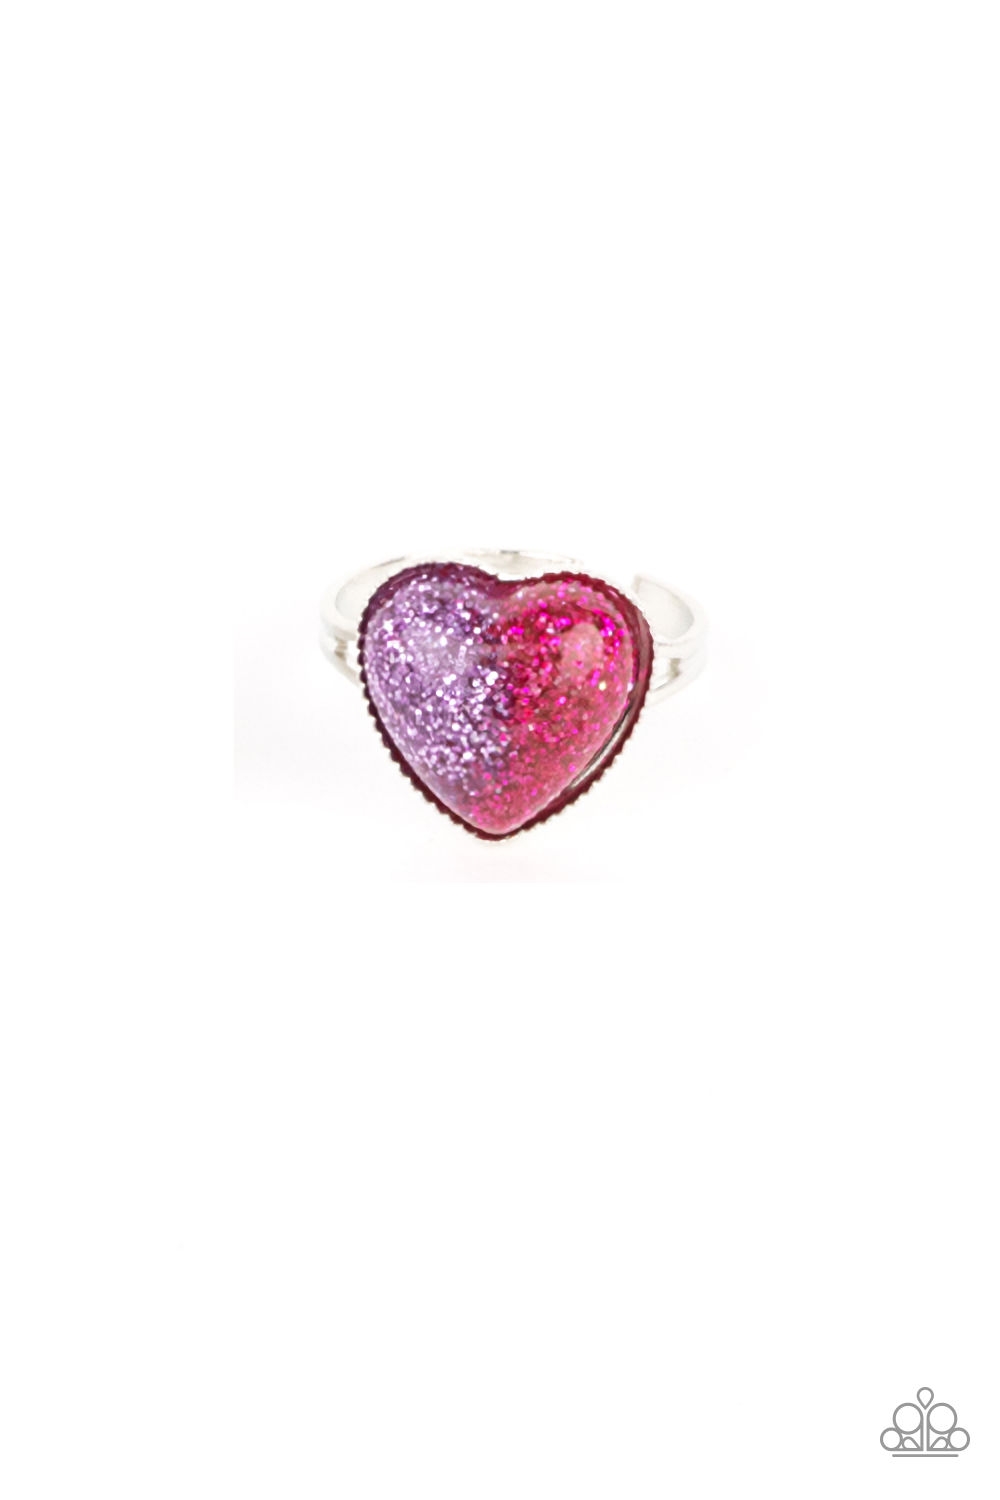 Ring - Starlet Shimmer Half & Half Hearts - Pur/Pnk